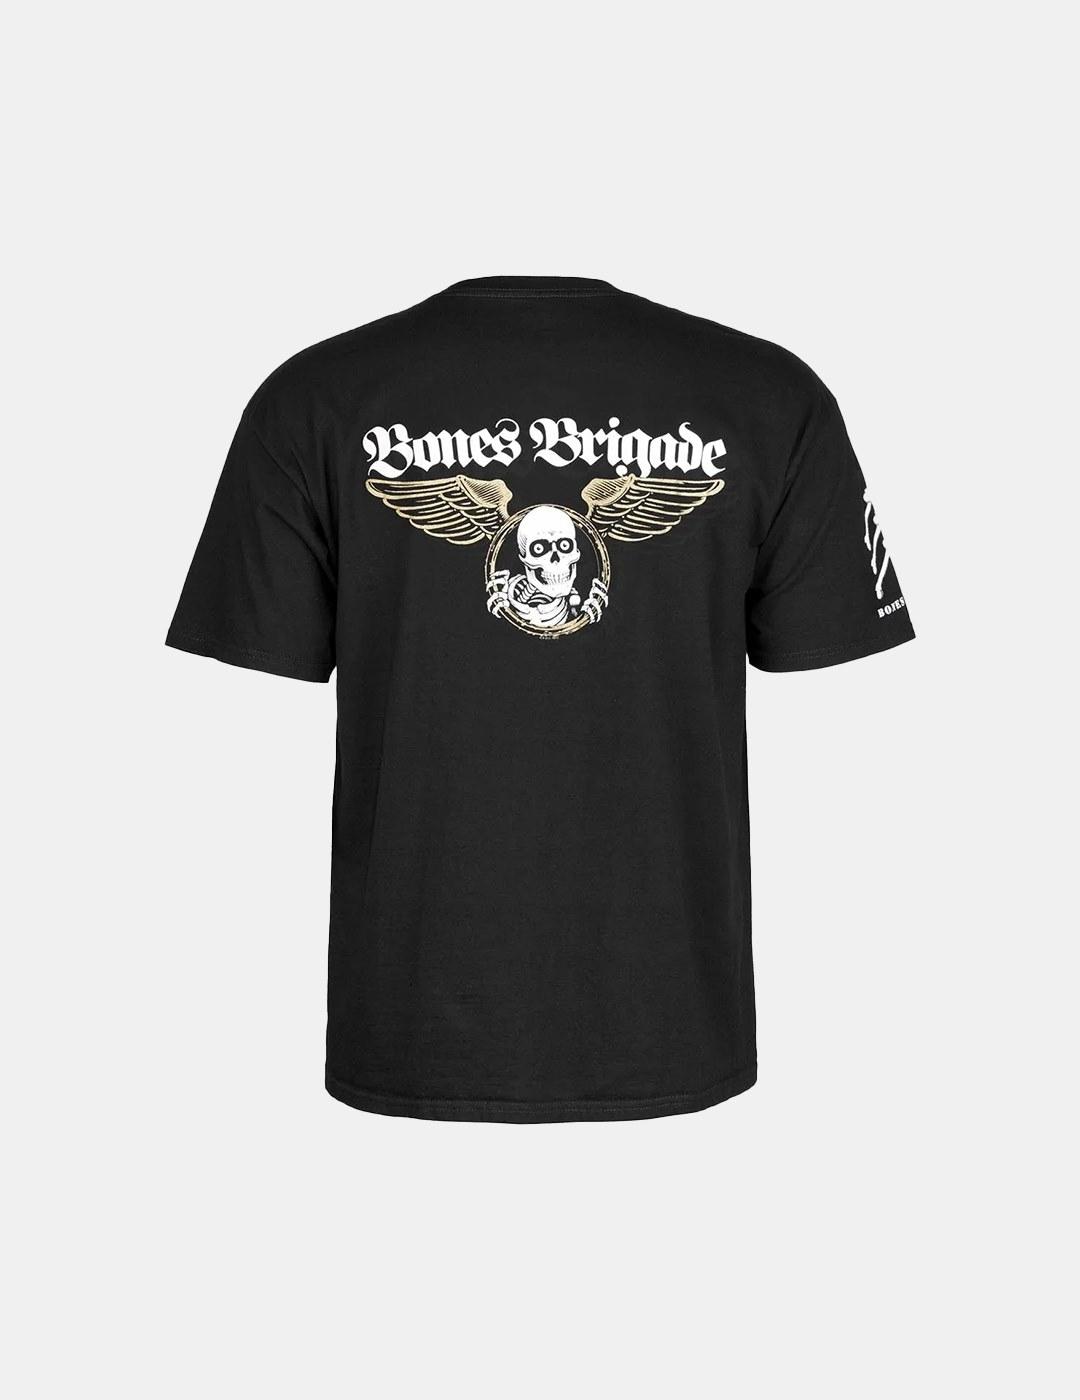 Camiseta Bones Brigade An Auto Negro